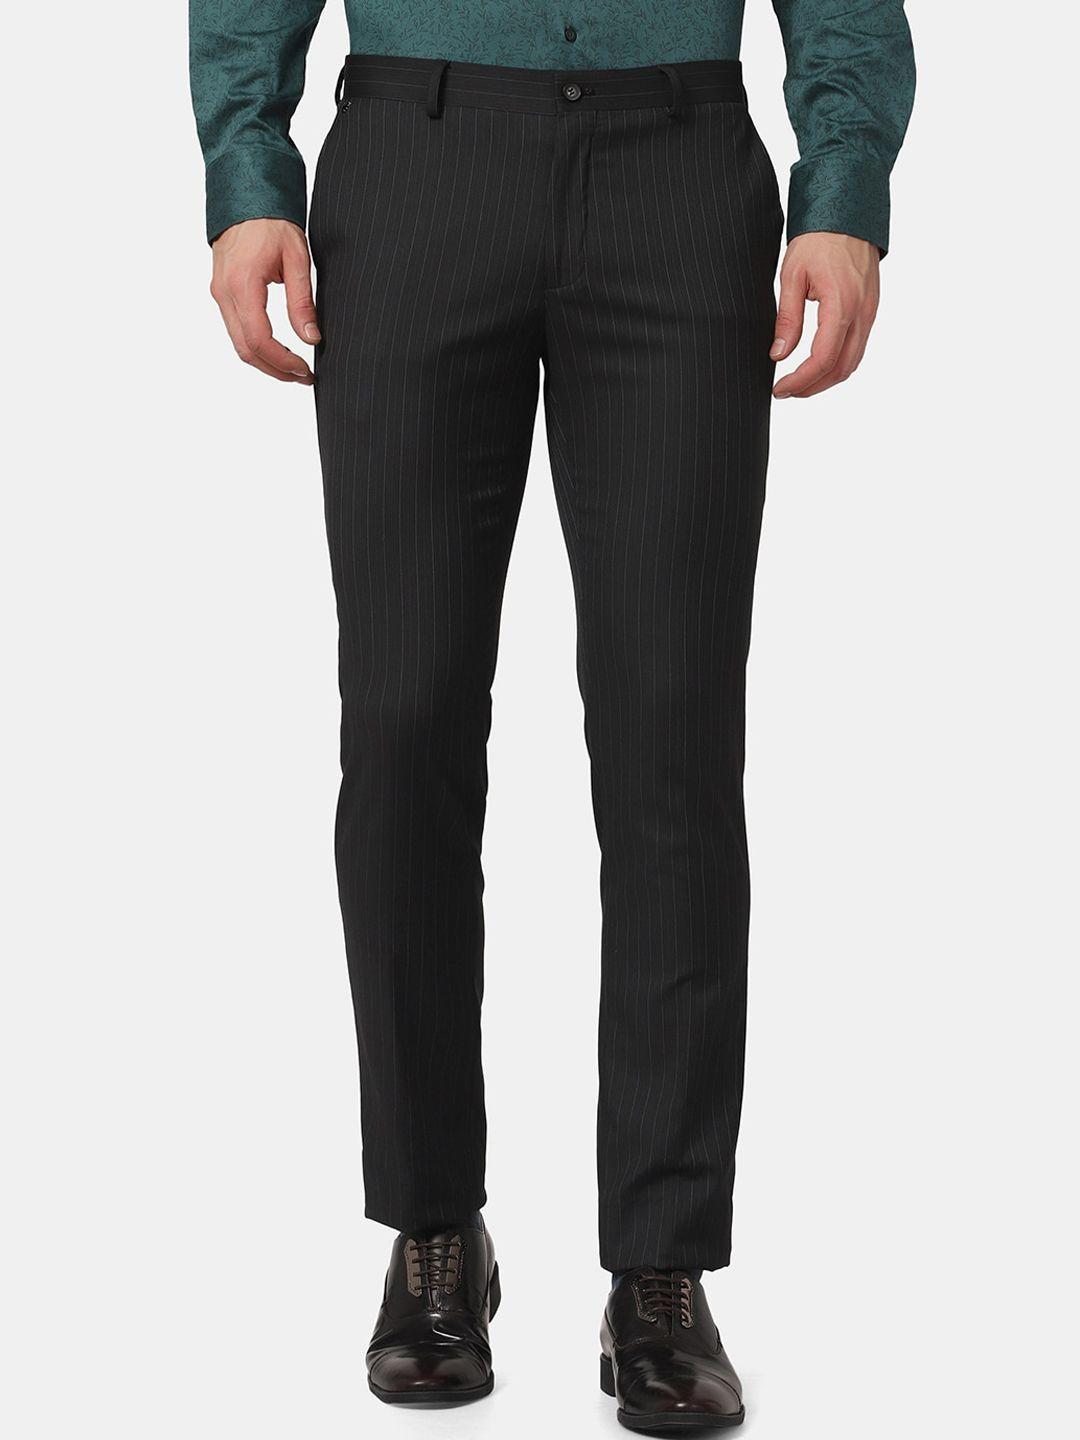 blackberrys-men-black-striped-slim-fit-low-rise-formal-trousers